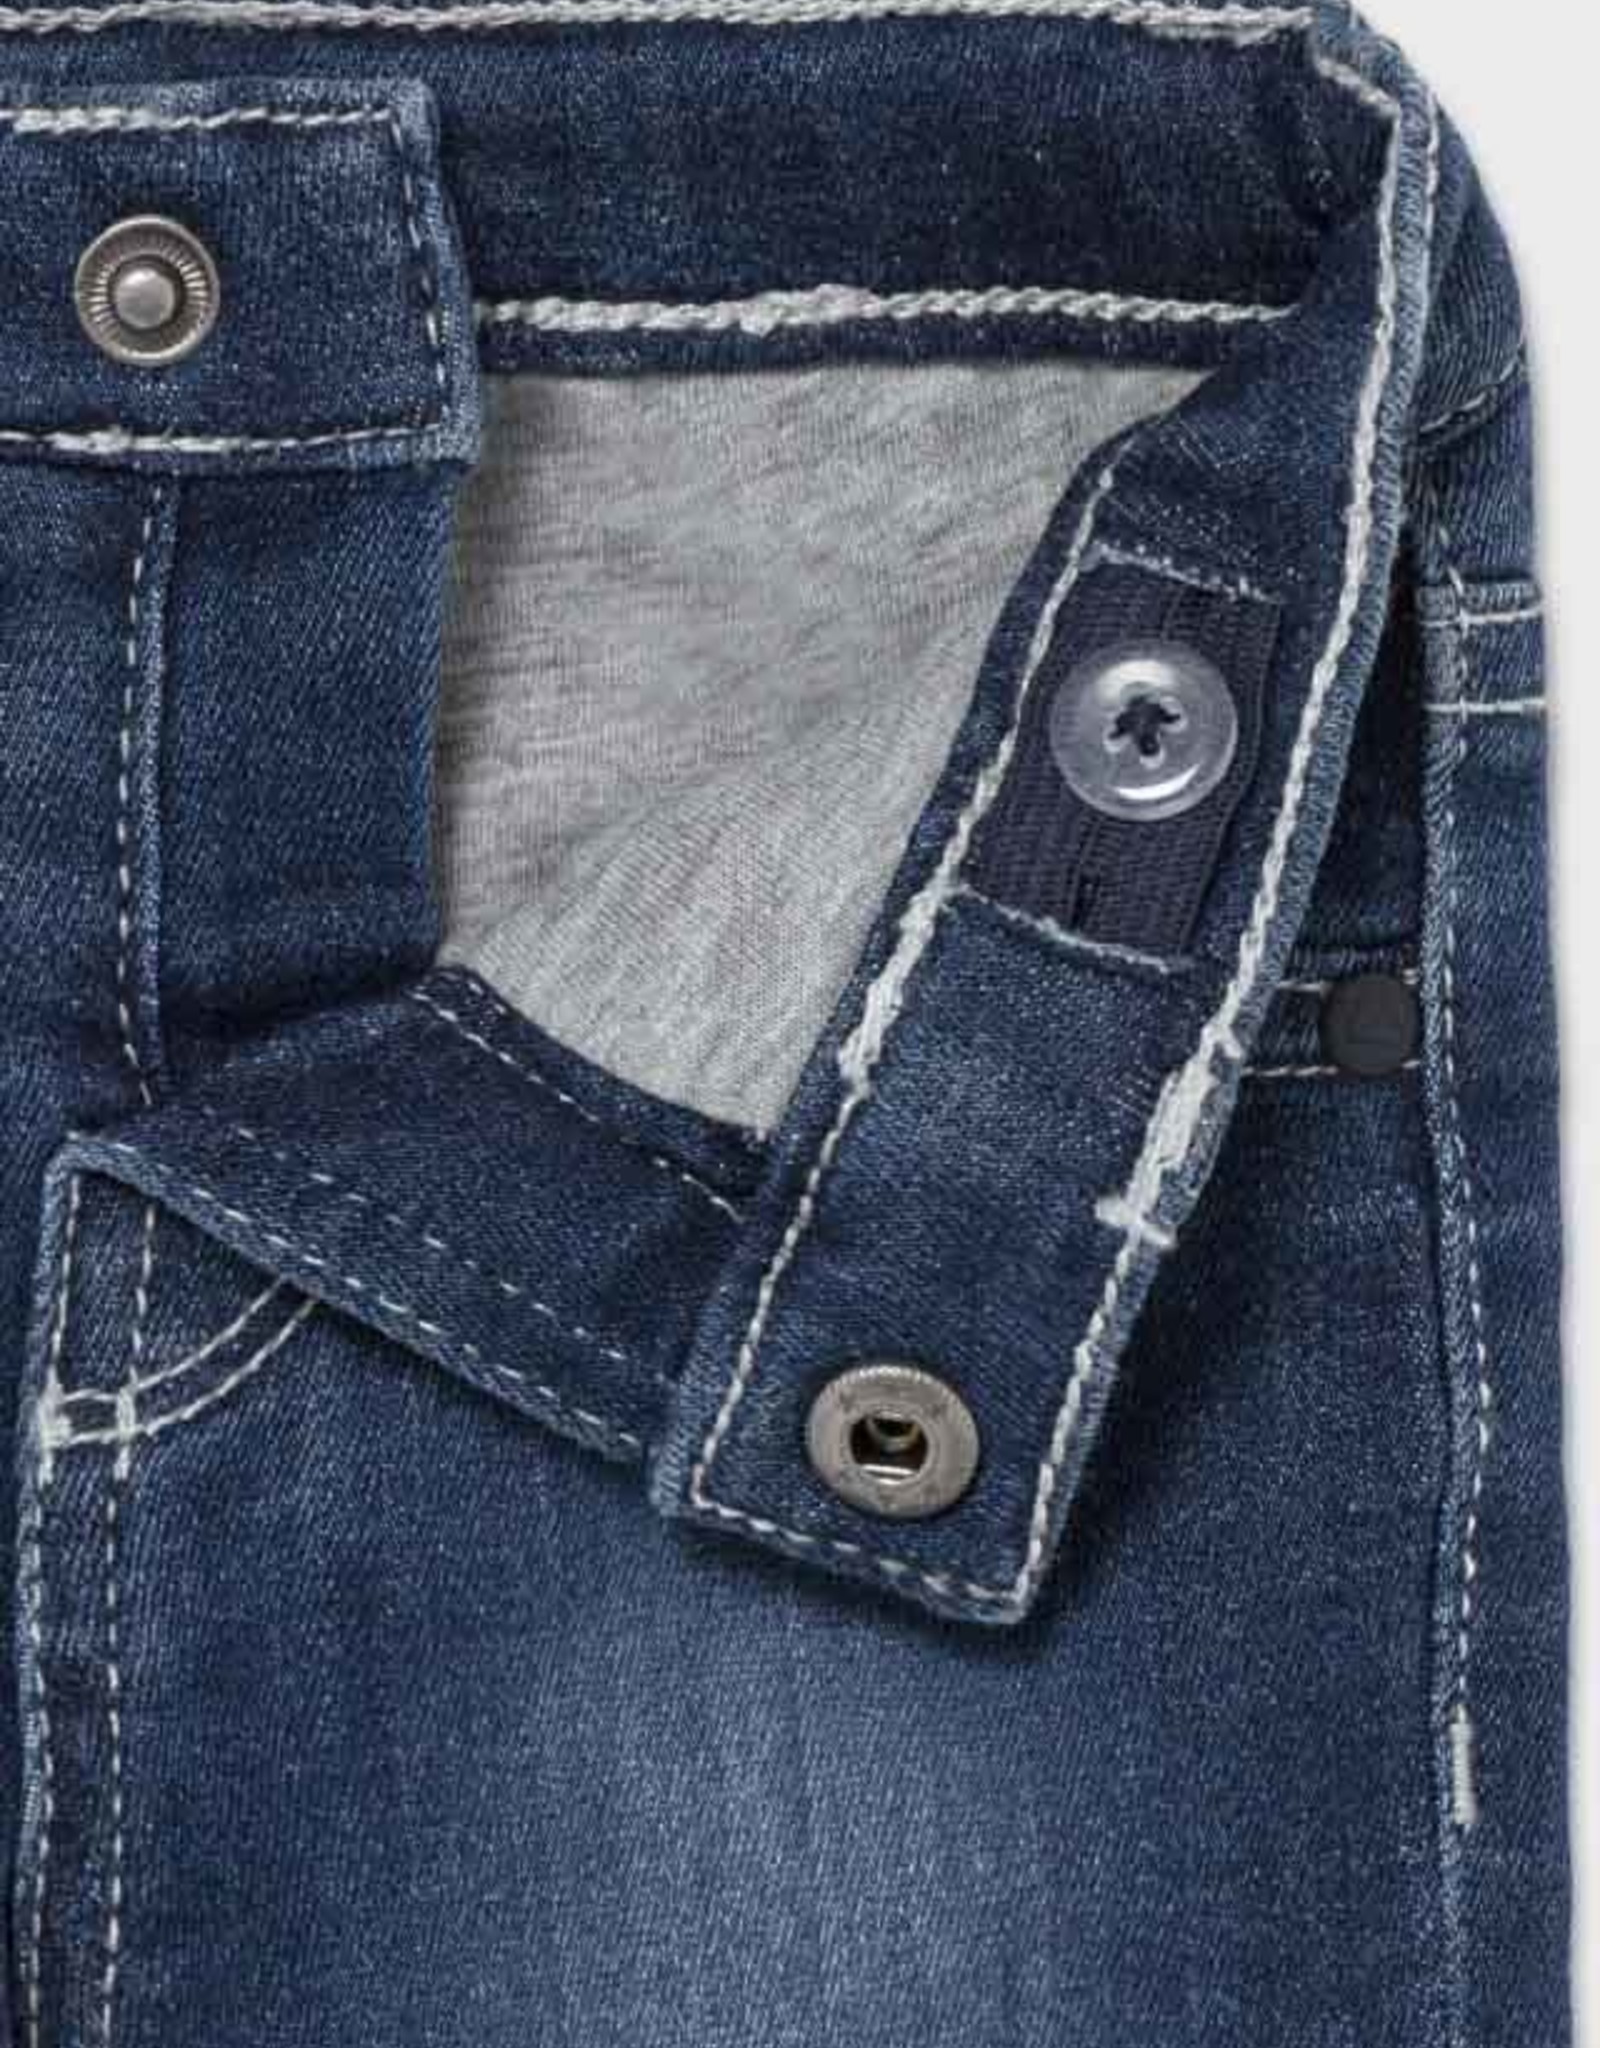 Mayoral Newborn Lined Jeans - Dark Wash